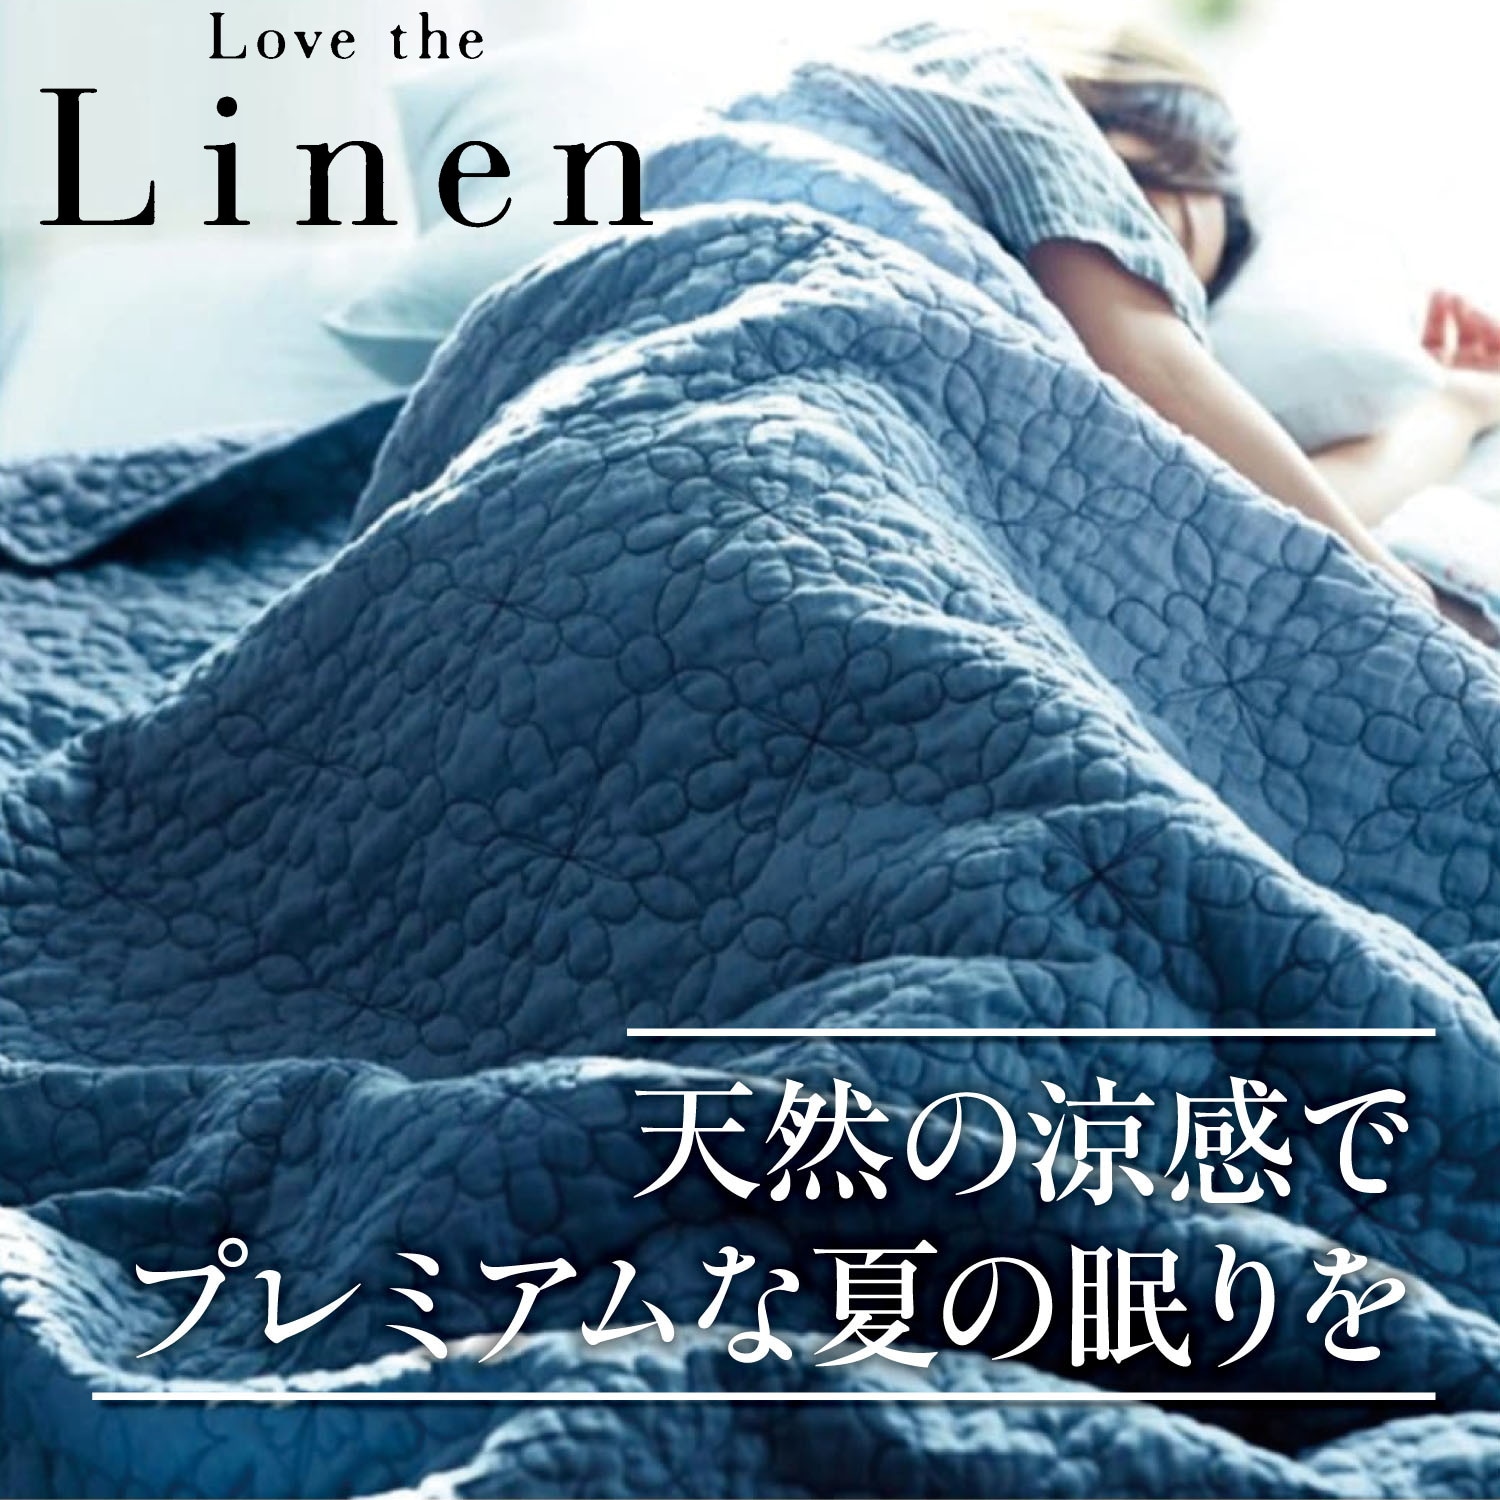 【ラブザリネン/Love the Linen】【5月7日までまとめ買いでお得】 フレンチリネンウォッシュキルトケット